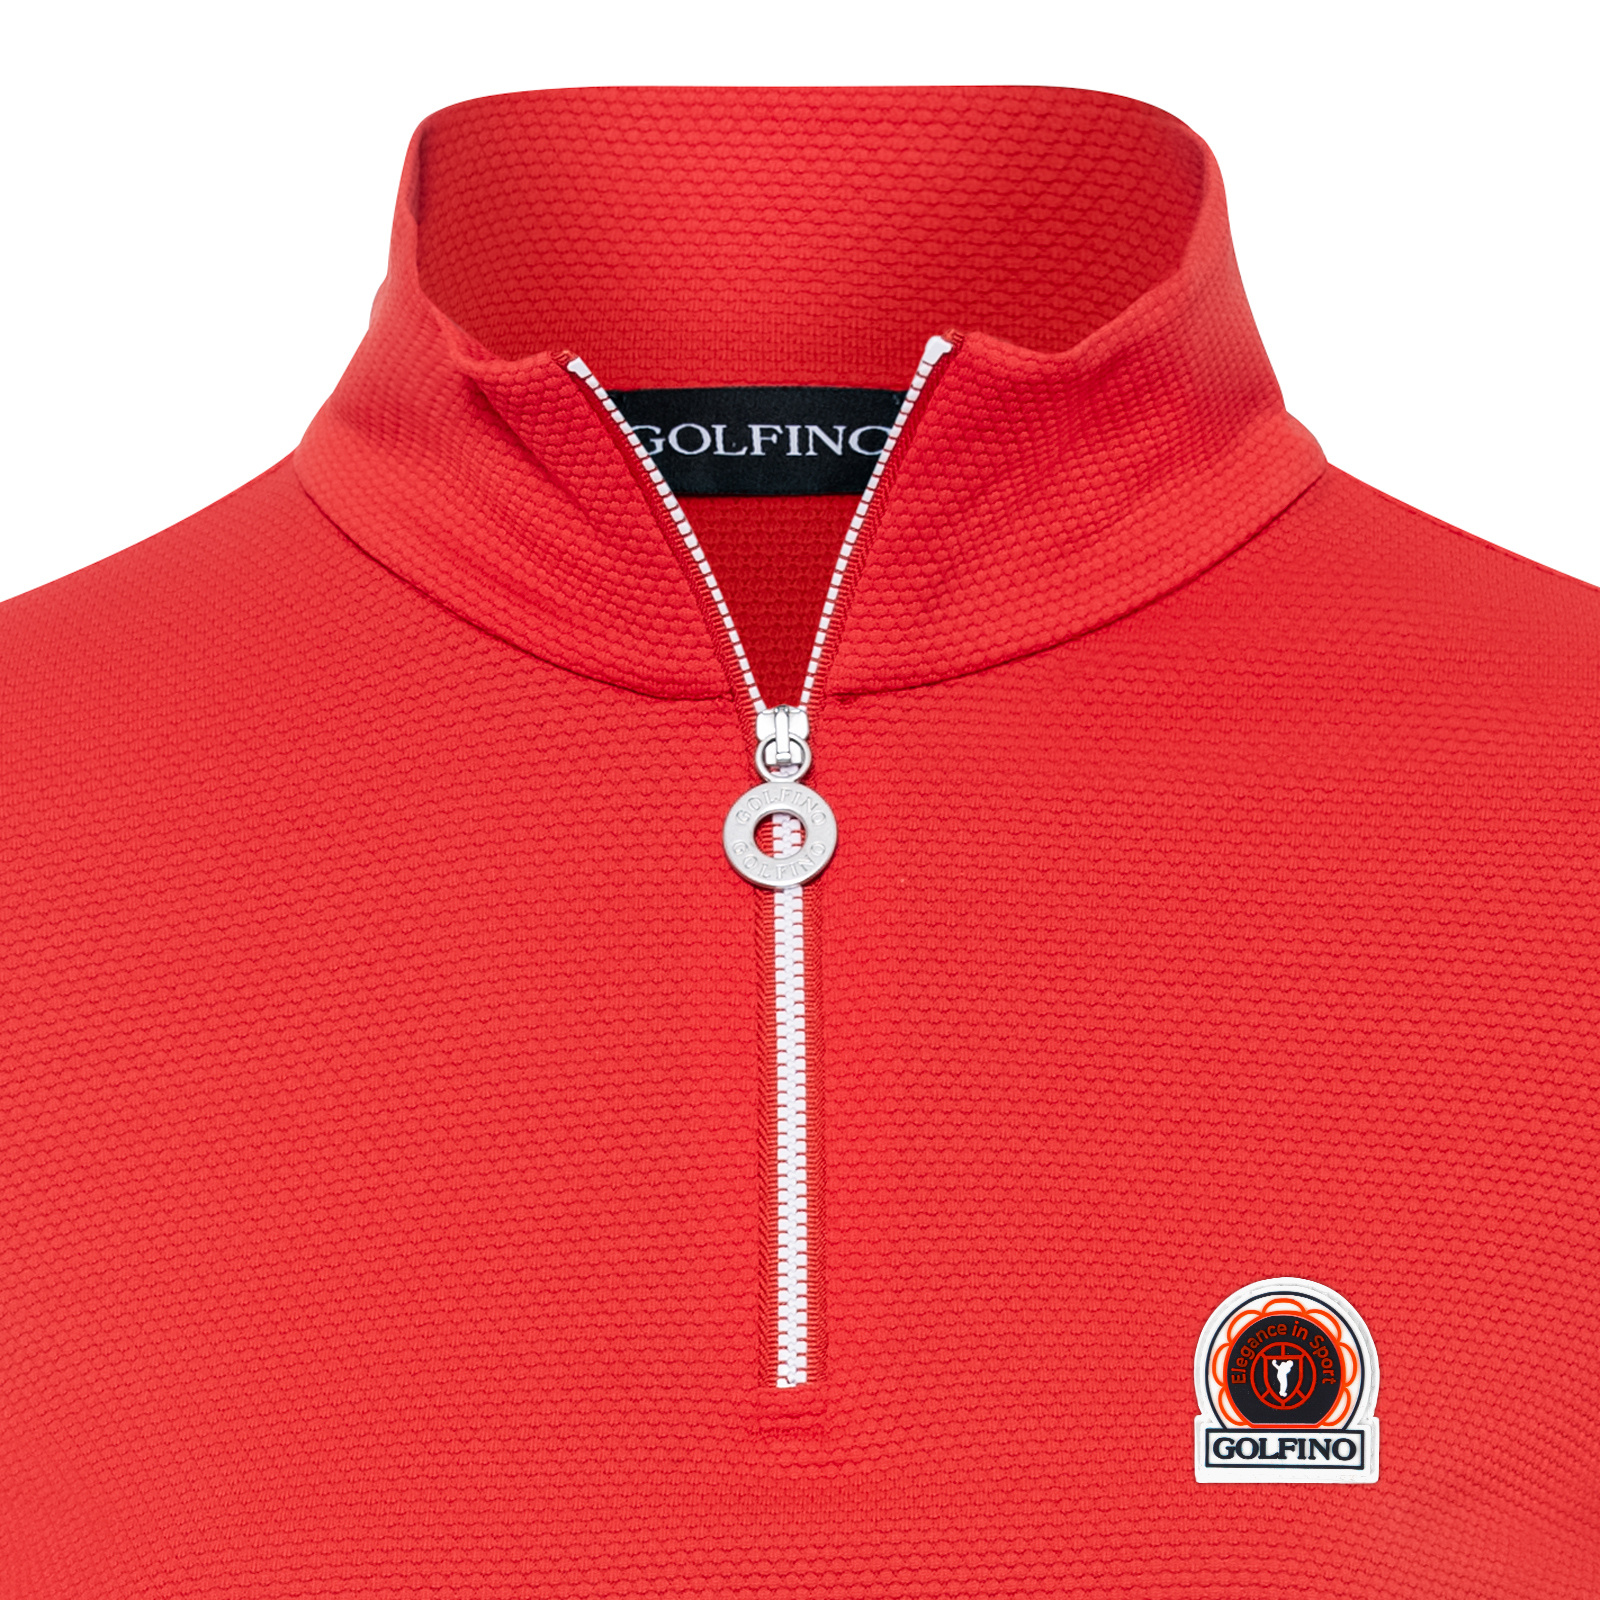 Camiseta de manga larga para el golf en tejido bubble jacquard con un innovador logotipo para mujer